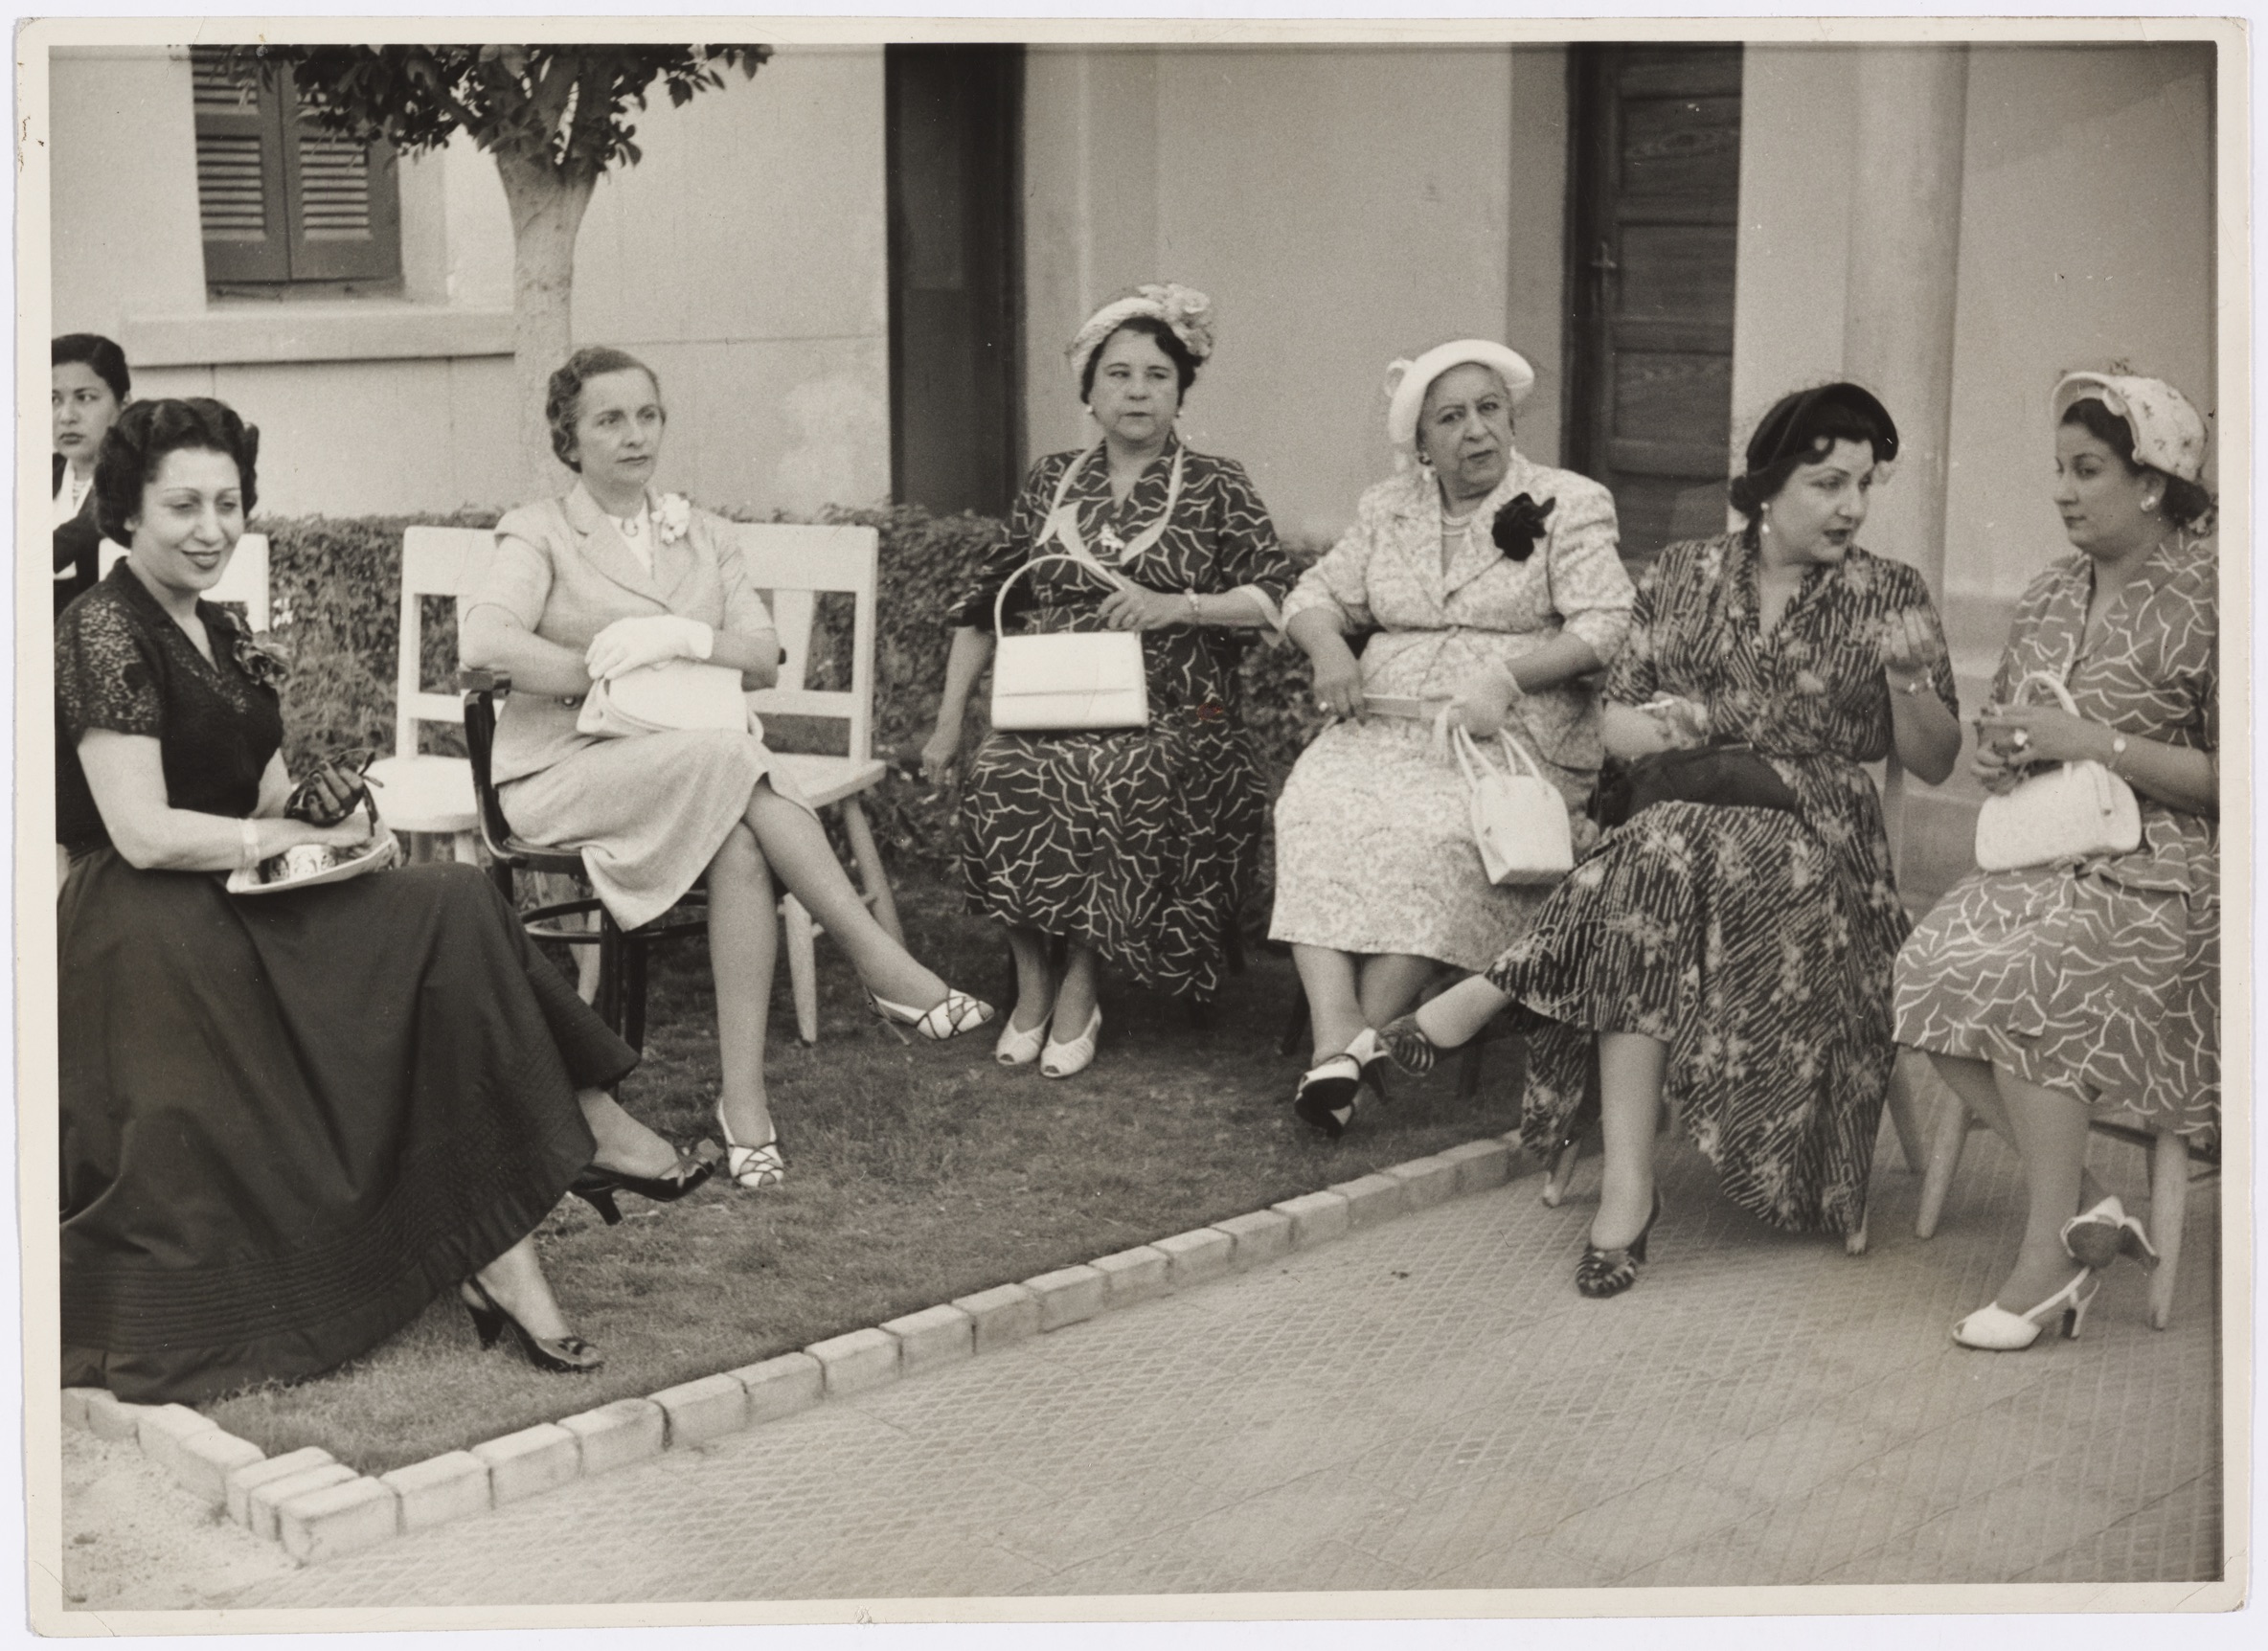 Membres de l’Union féministe fondée par Hoda Chaaraoui, 1950, Beyrouth (The Arab Image Foundation)